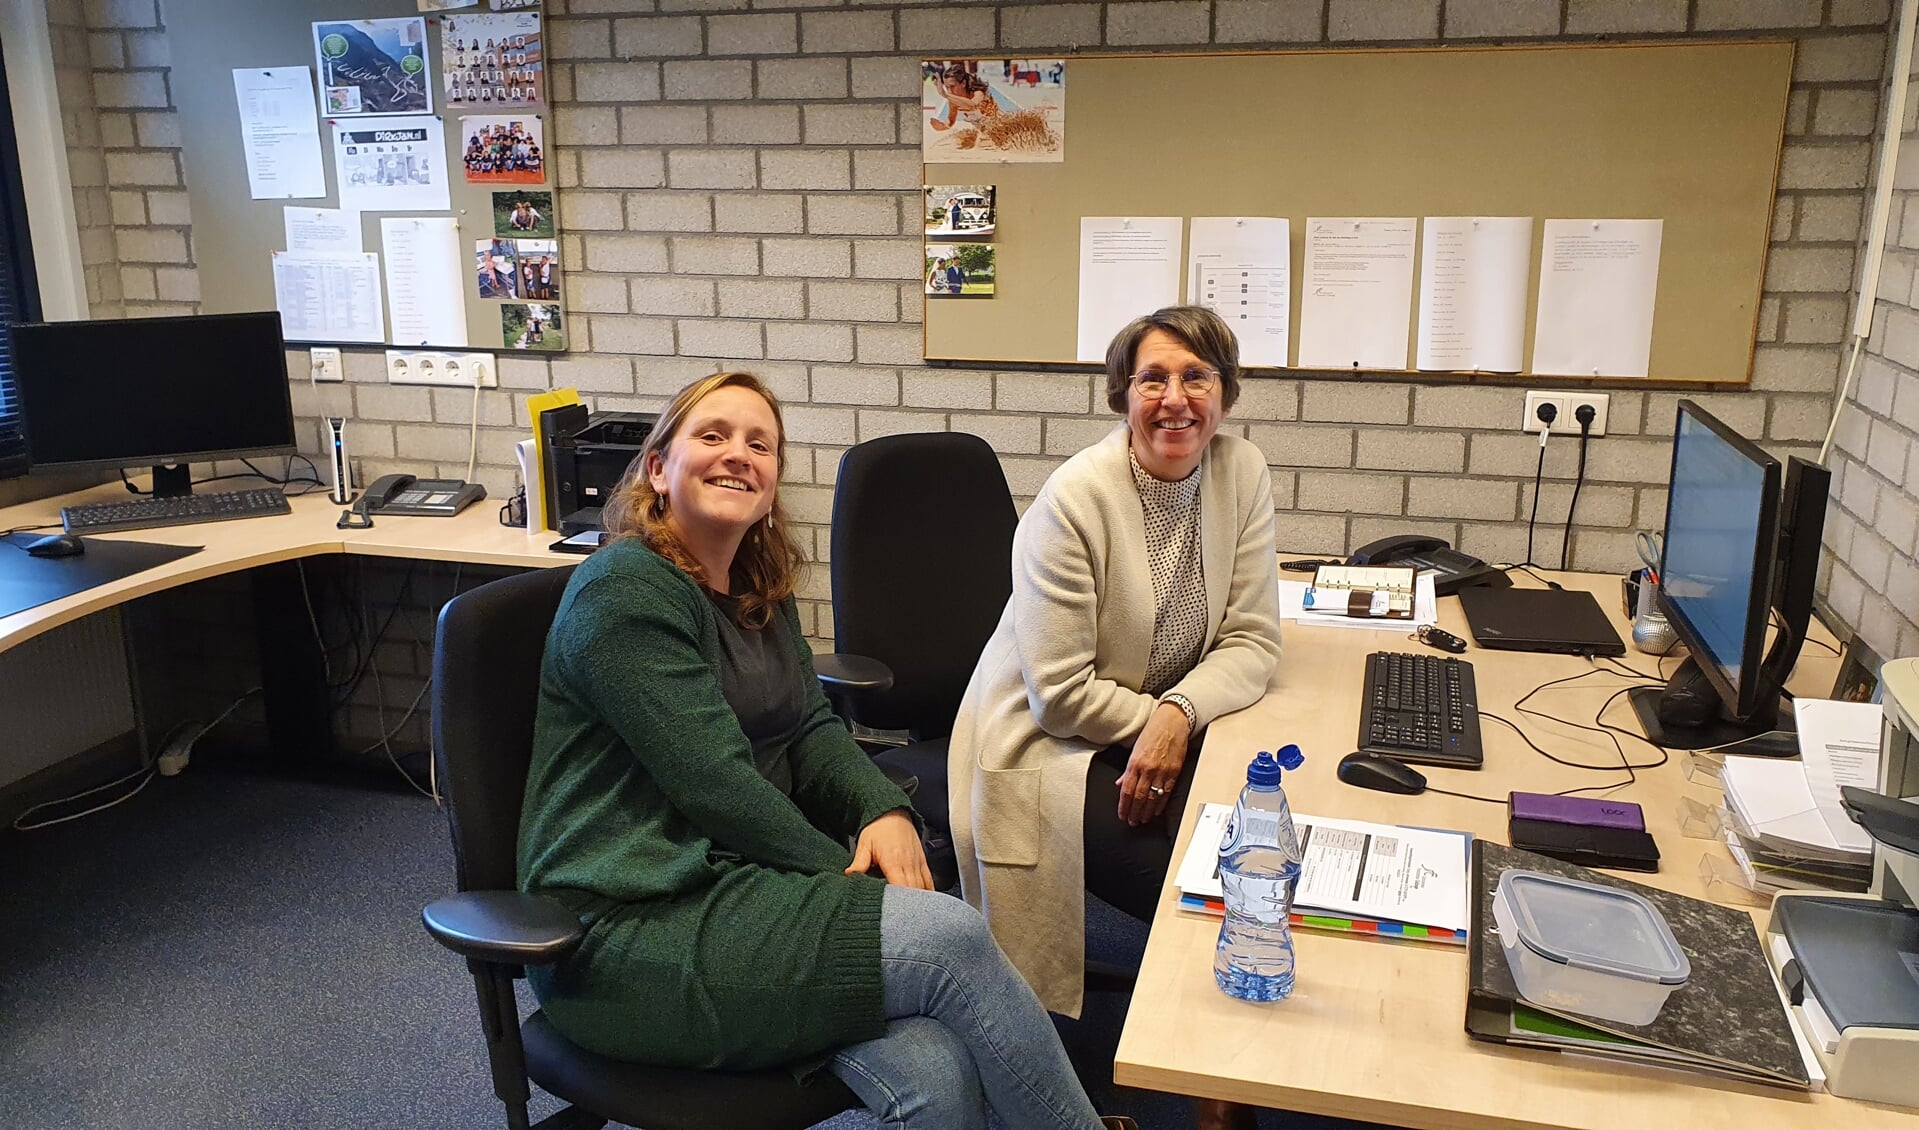 Zorgcoördinator Christa van Kooten (rechts) van het JFC, hier op de foto met collega Renske van der Veen.